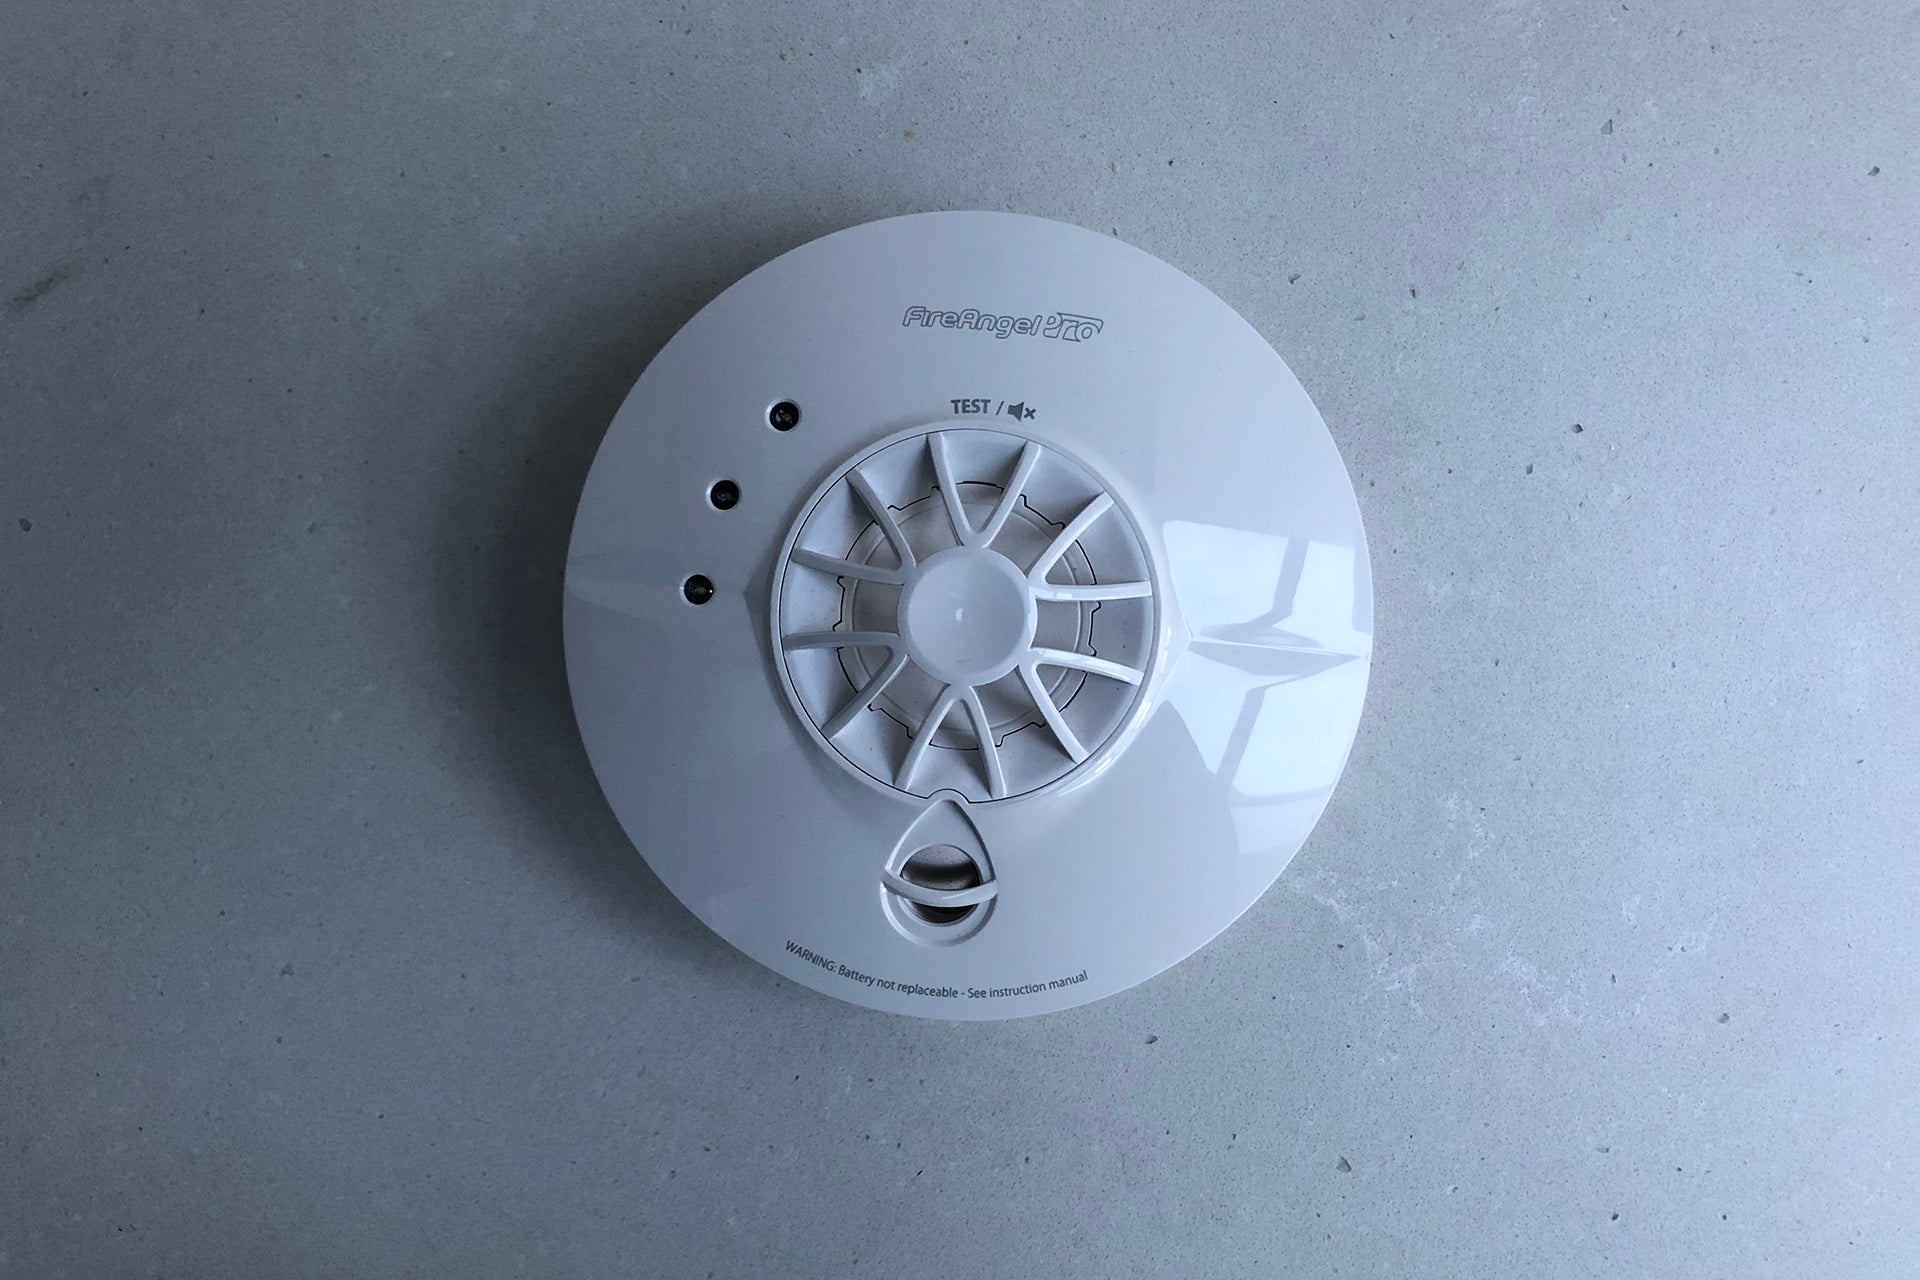 FireAngel Pro Heat Alarm